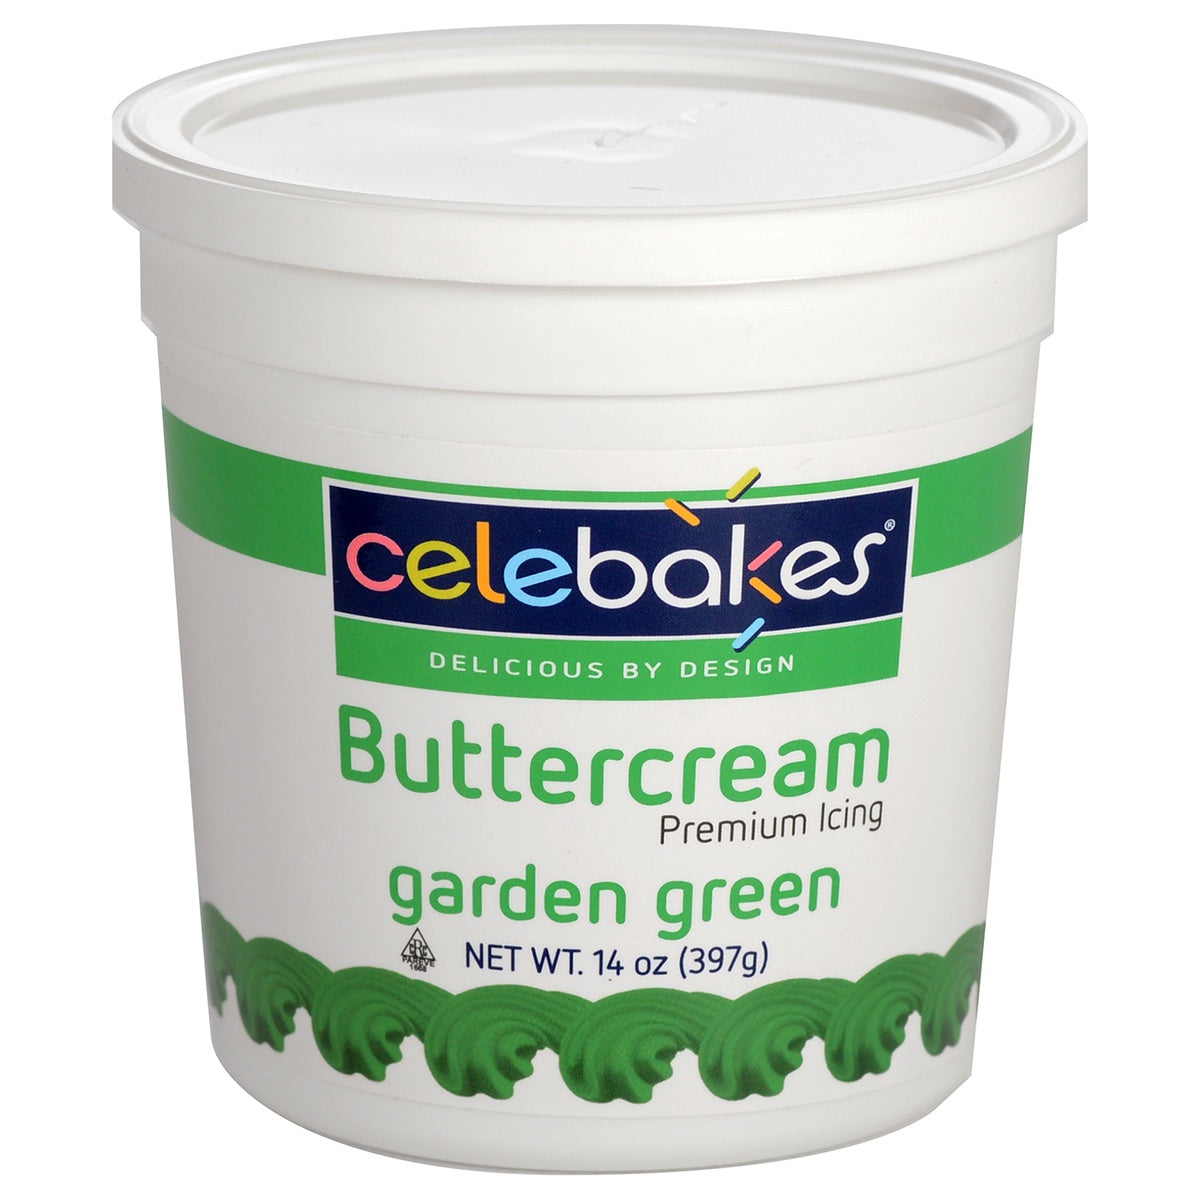 14oz Garden Green Buttercream, Celebakes